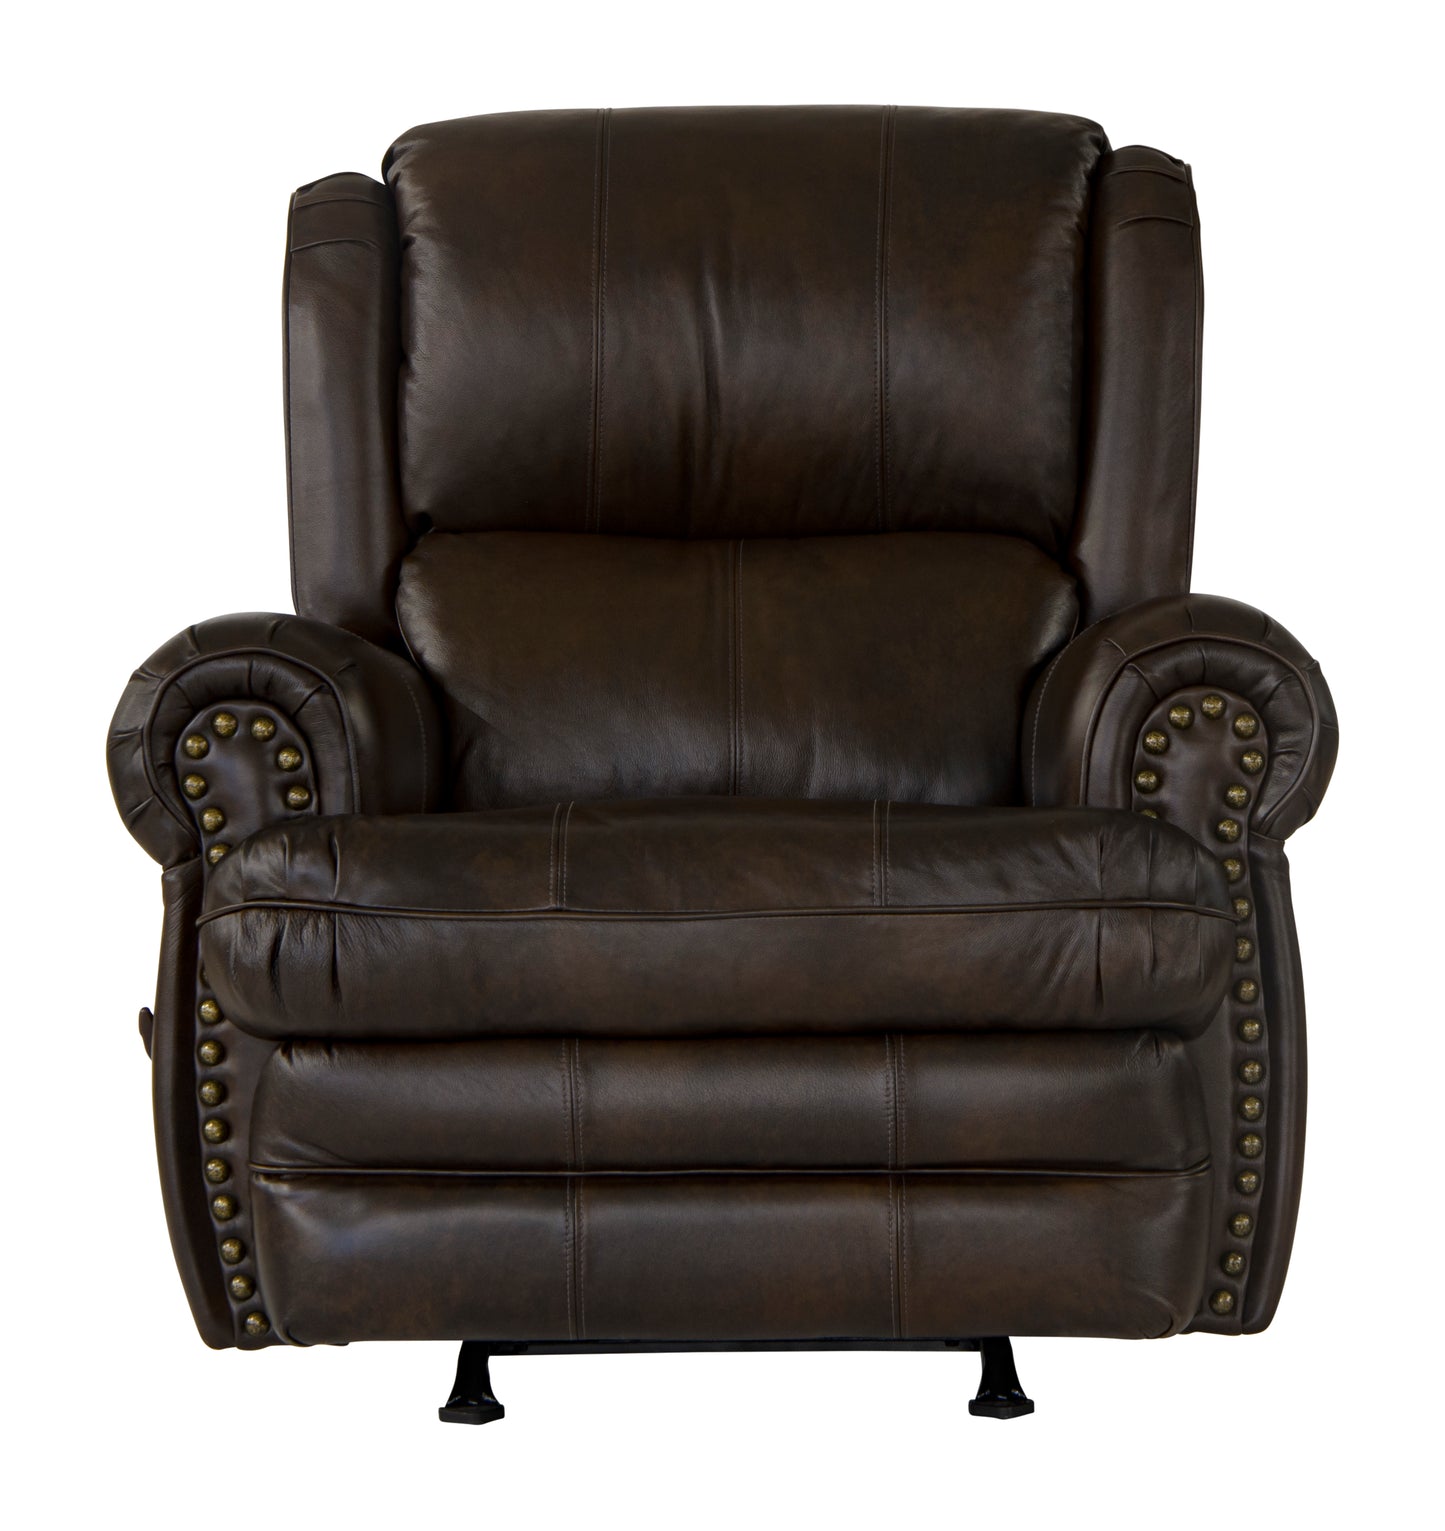 Roberto Italian Leather Match Sofa, Loveseat, Chair & Ottoman